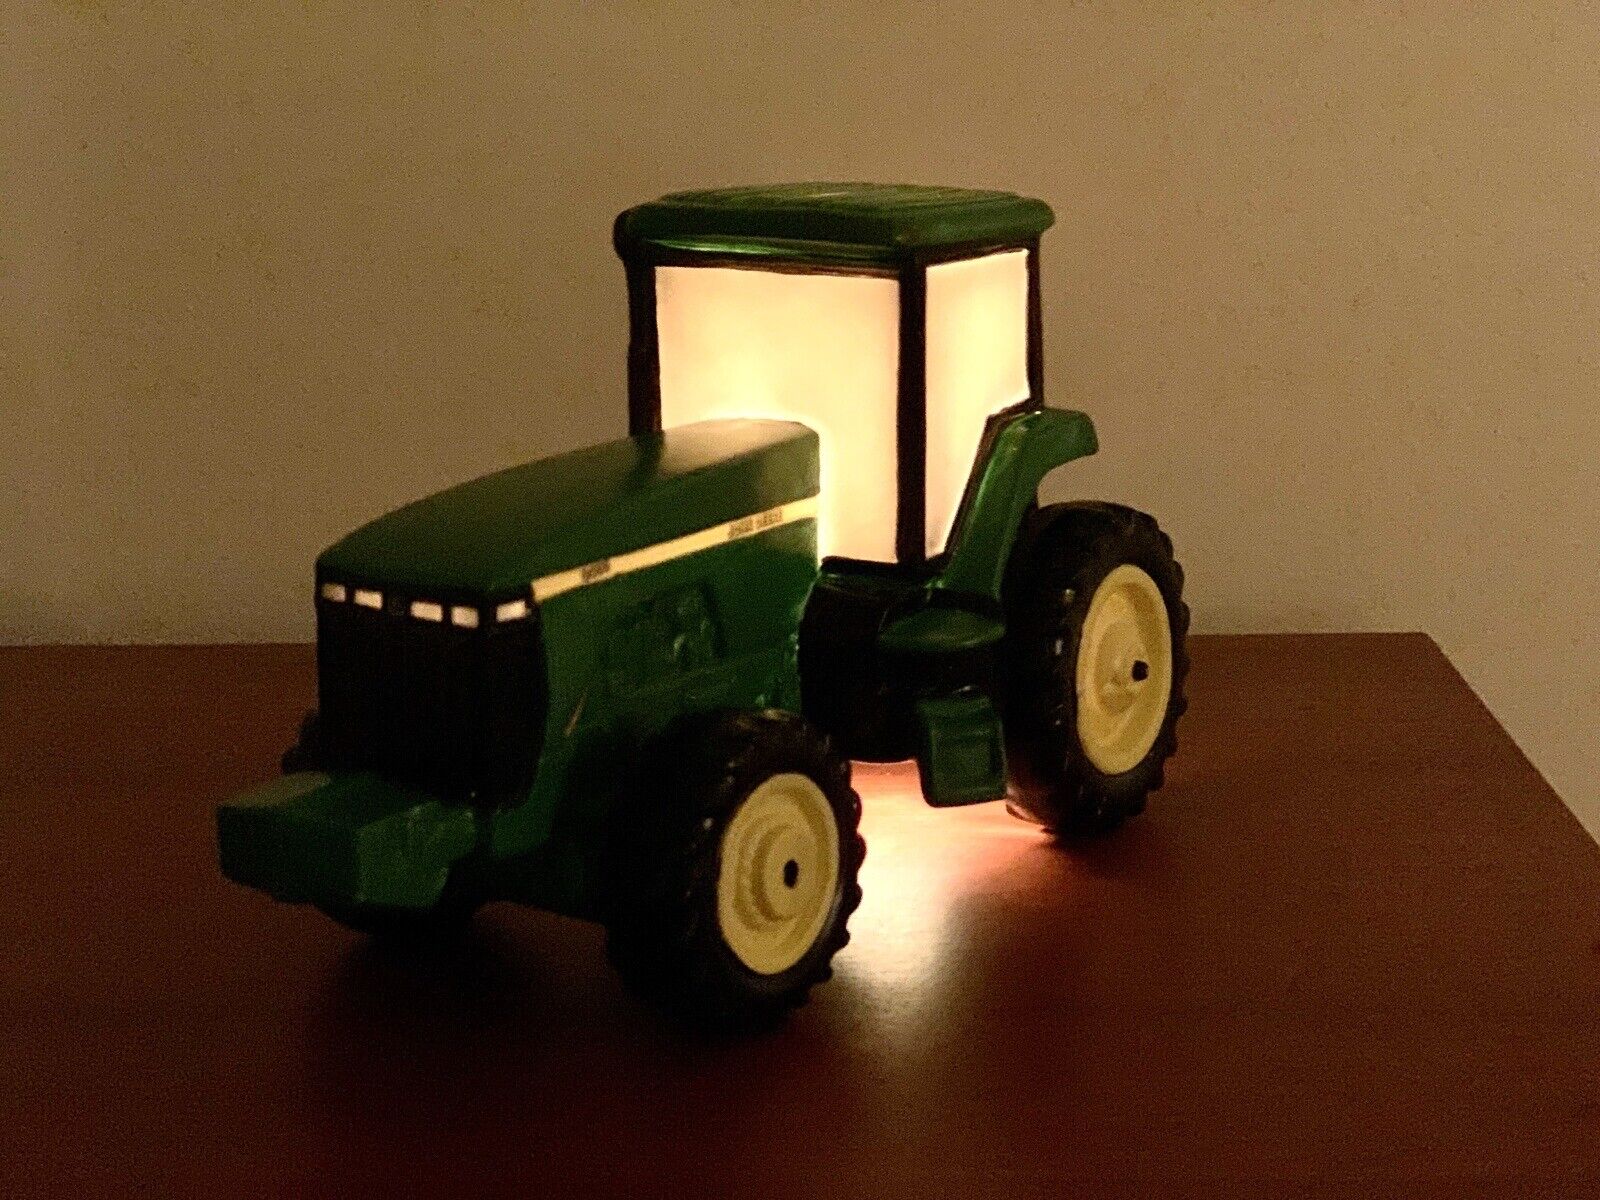 Enesco John Deere Tractor Night Light #538701 Vintage Ceramic Works very clean.